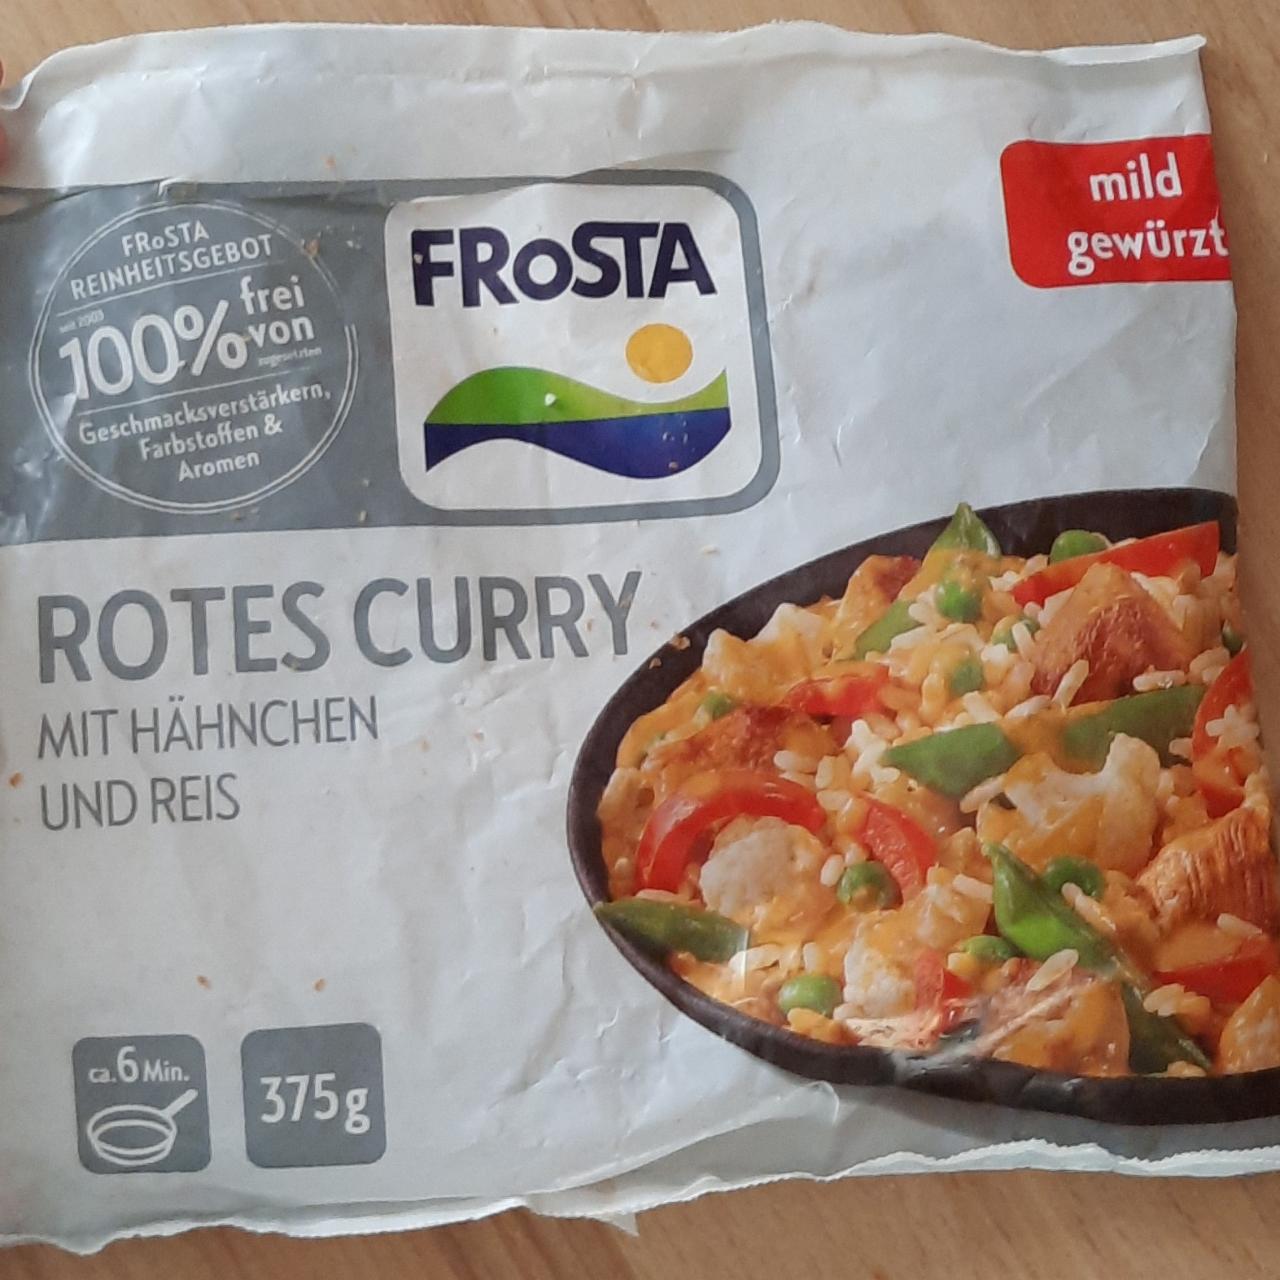 Fotografie - Rotes curry mit Hähnchen und reis FRoSTA